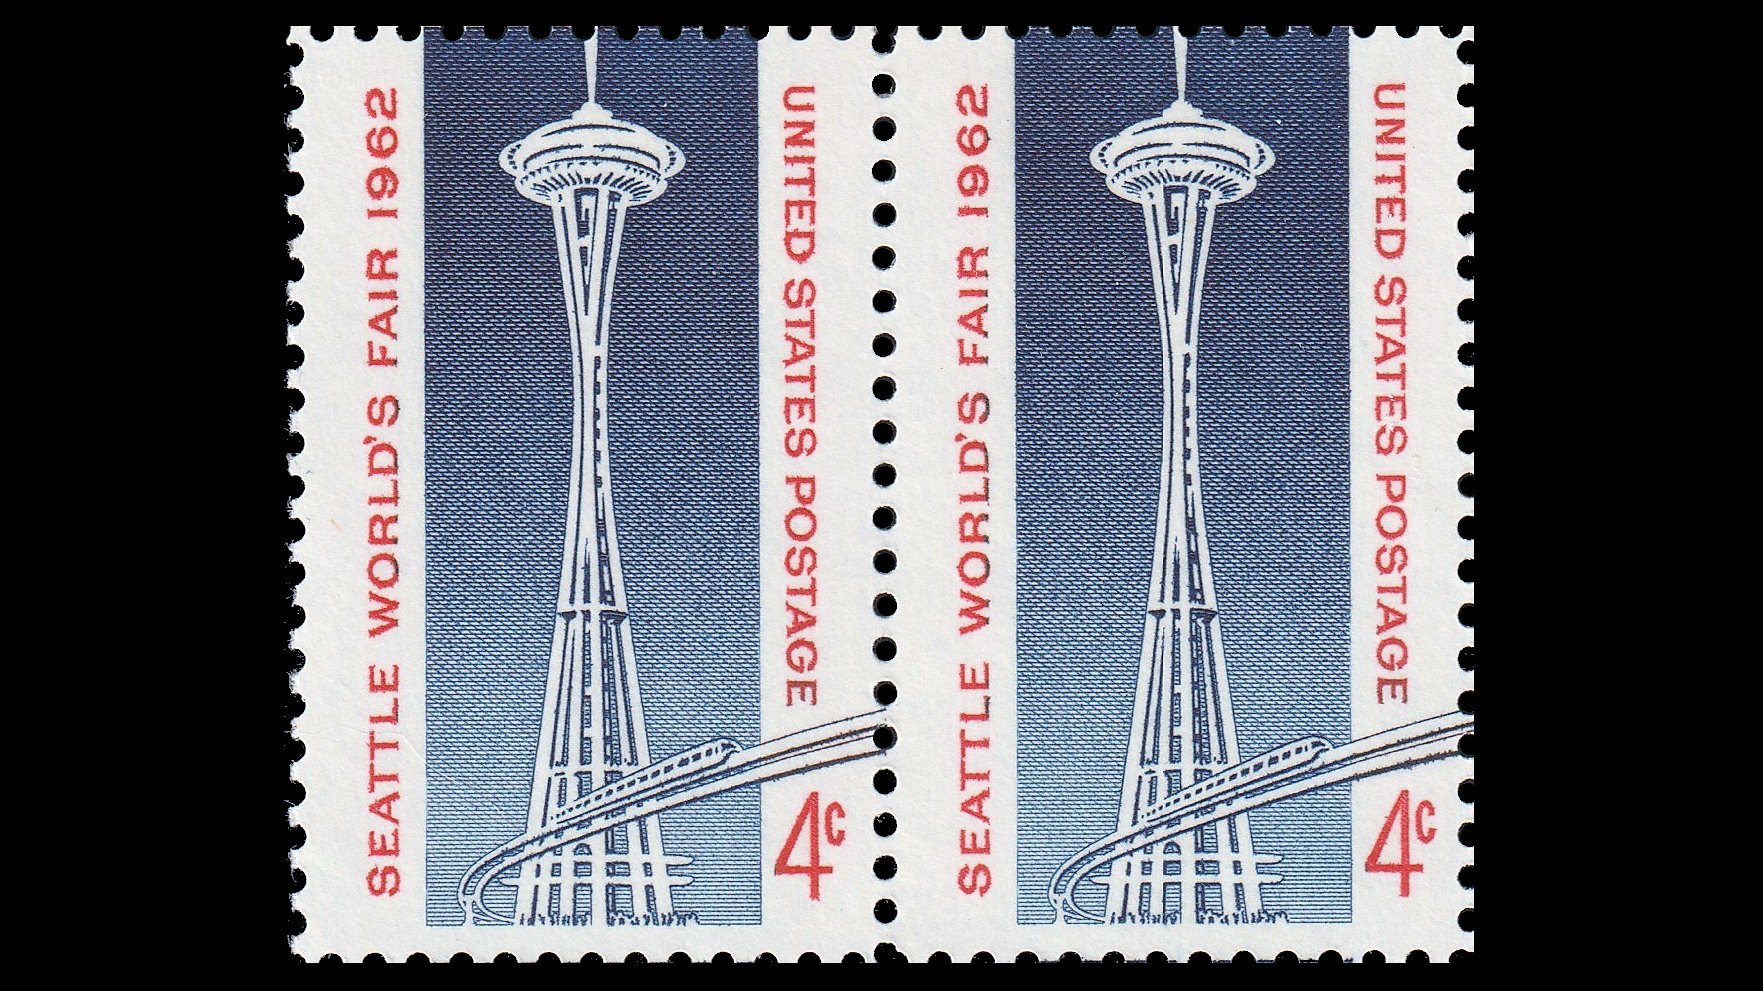 Century 21 Exposition, Seattle 1962